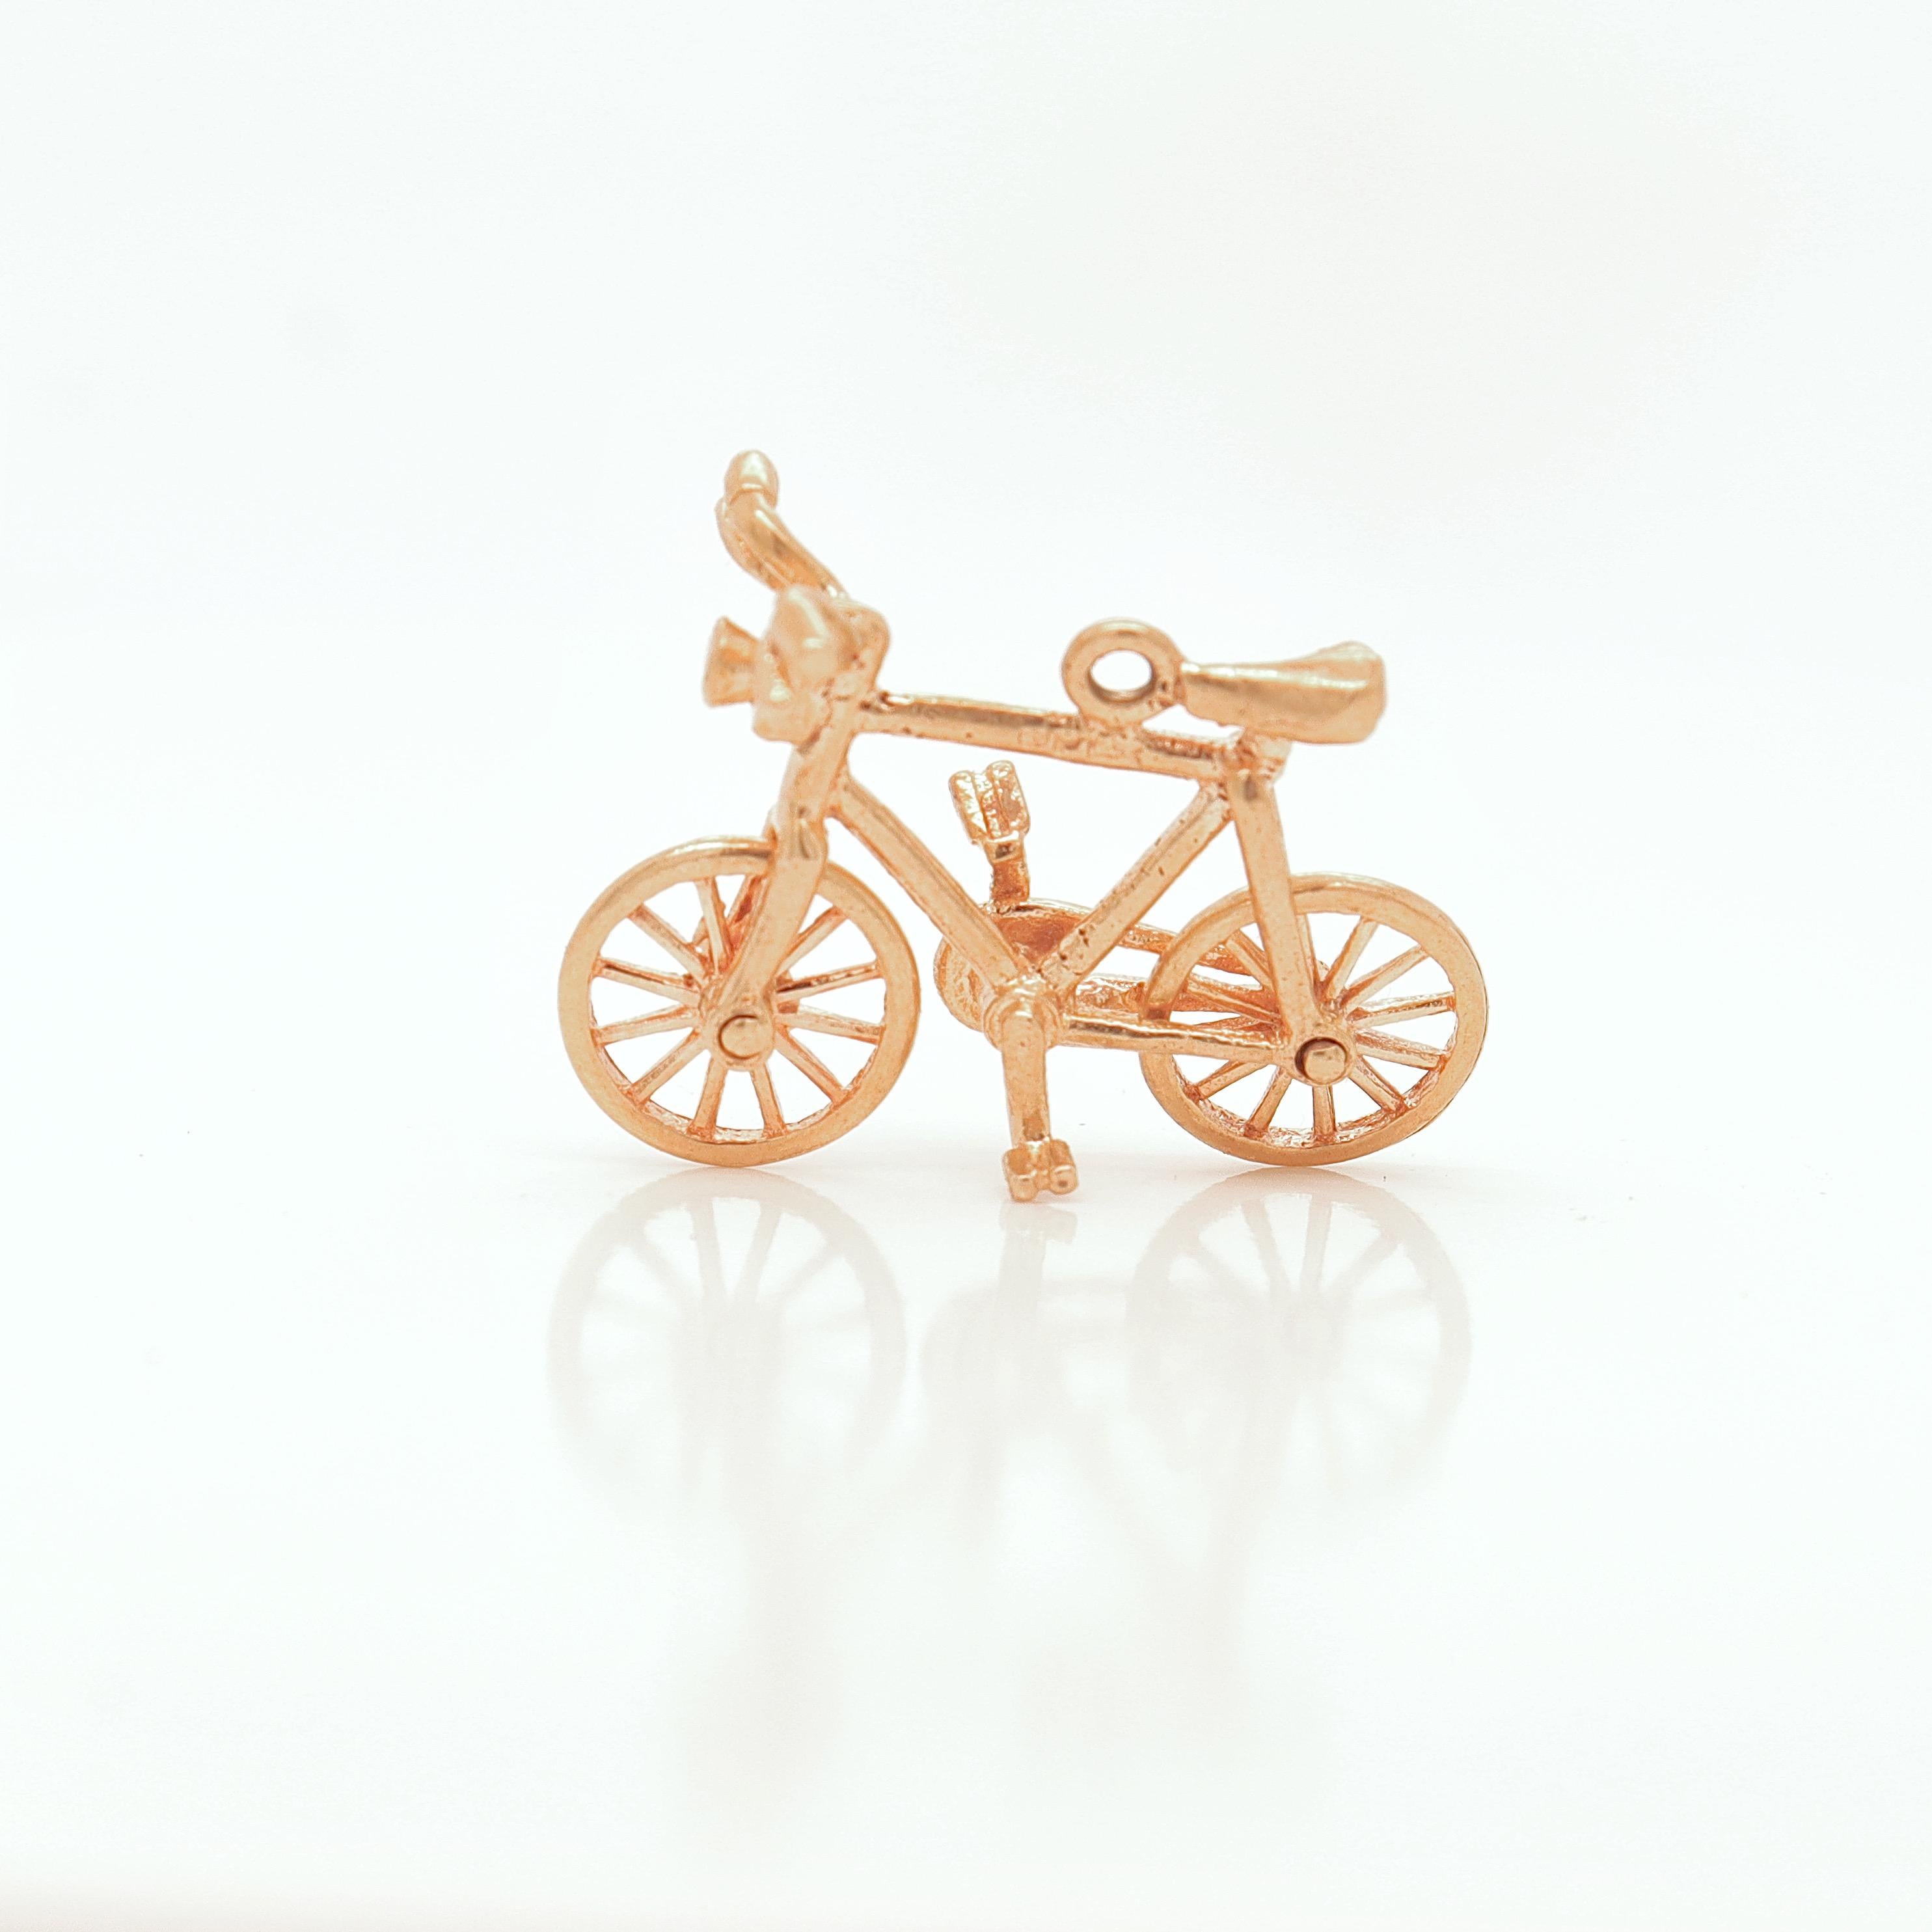 Ein schöner Vintage-Charme für ein Armband.

Aus 14-karätigem Gold.

In Form eines Fahrrads.

Einfach ein toller Charme!

Datum:
20. Jahrhundert

Allgemeiner Zustand:
Es ist in einem insgesamt guten, wie abgebildet, gebrauchten Zustand mit einigen